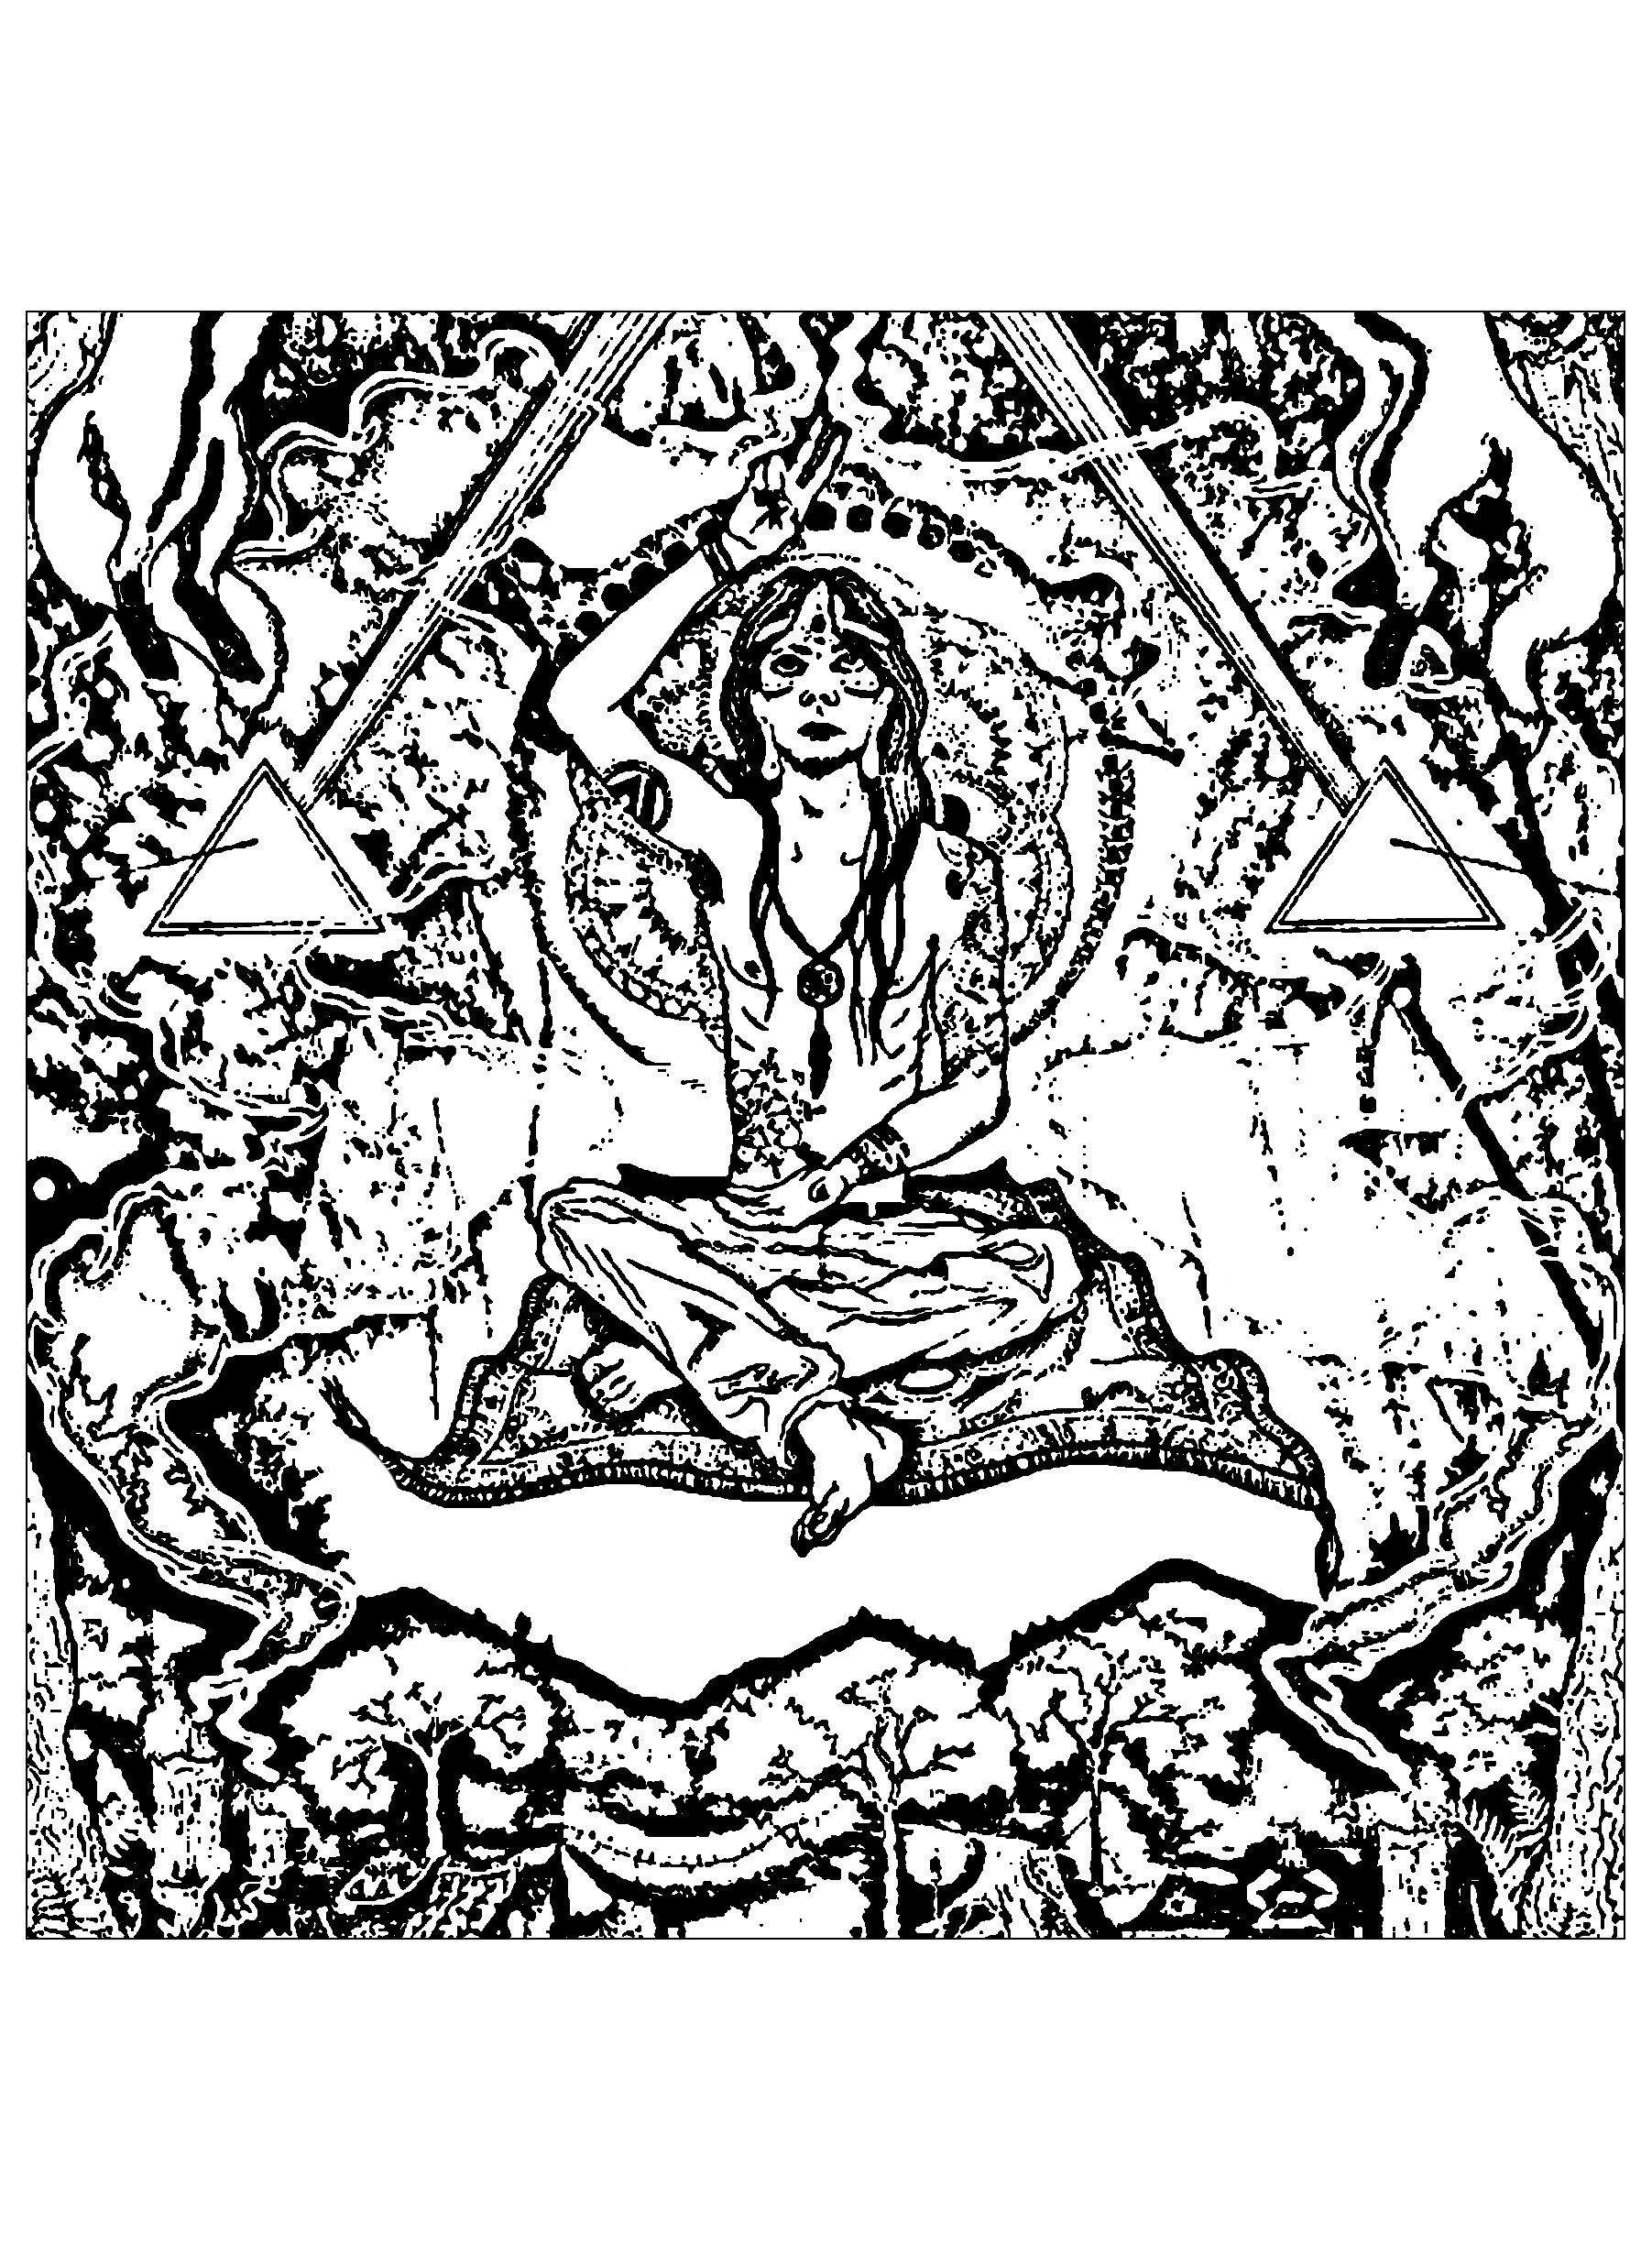 Femme méditant sur un tapis, avec en fond des symboles Illuminati (comme des pyramides)